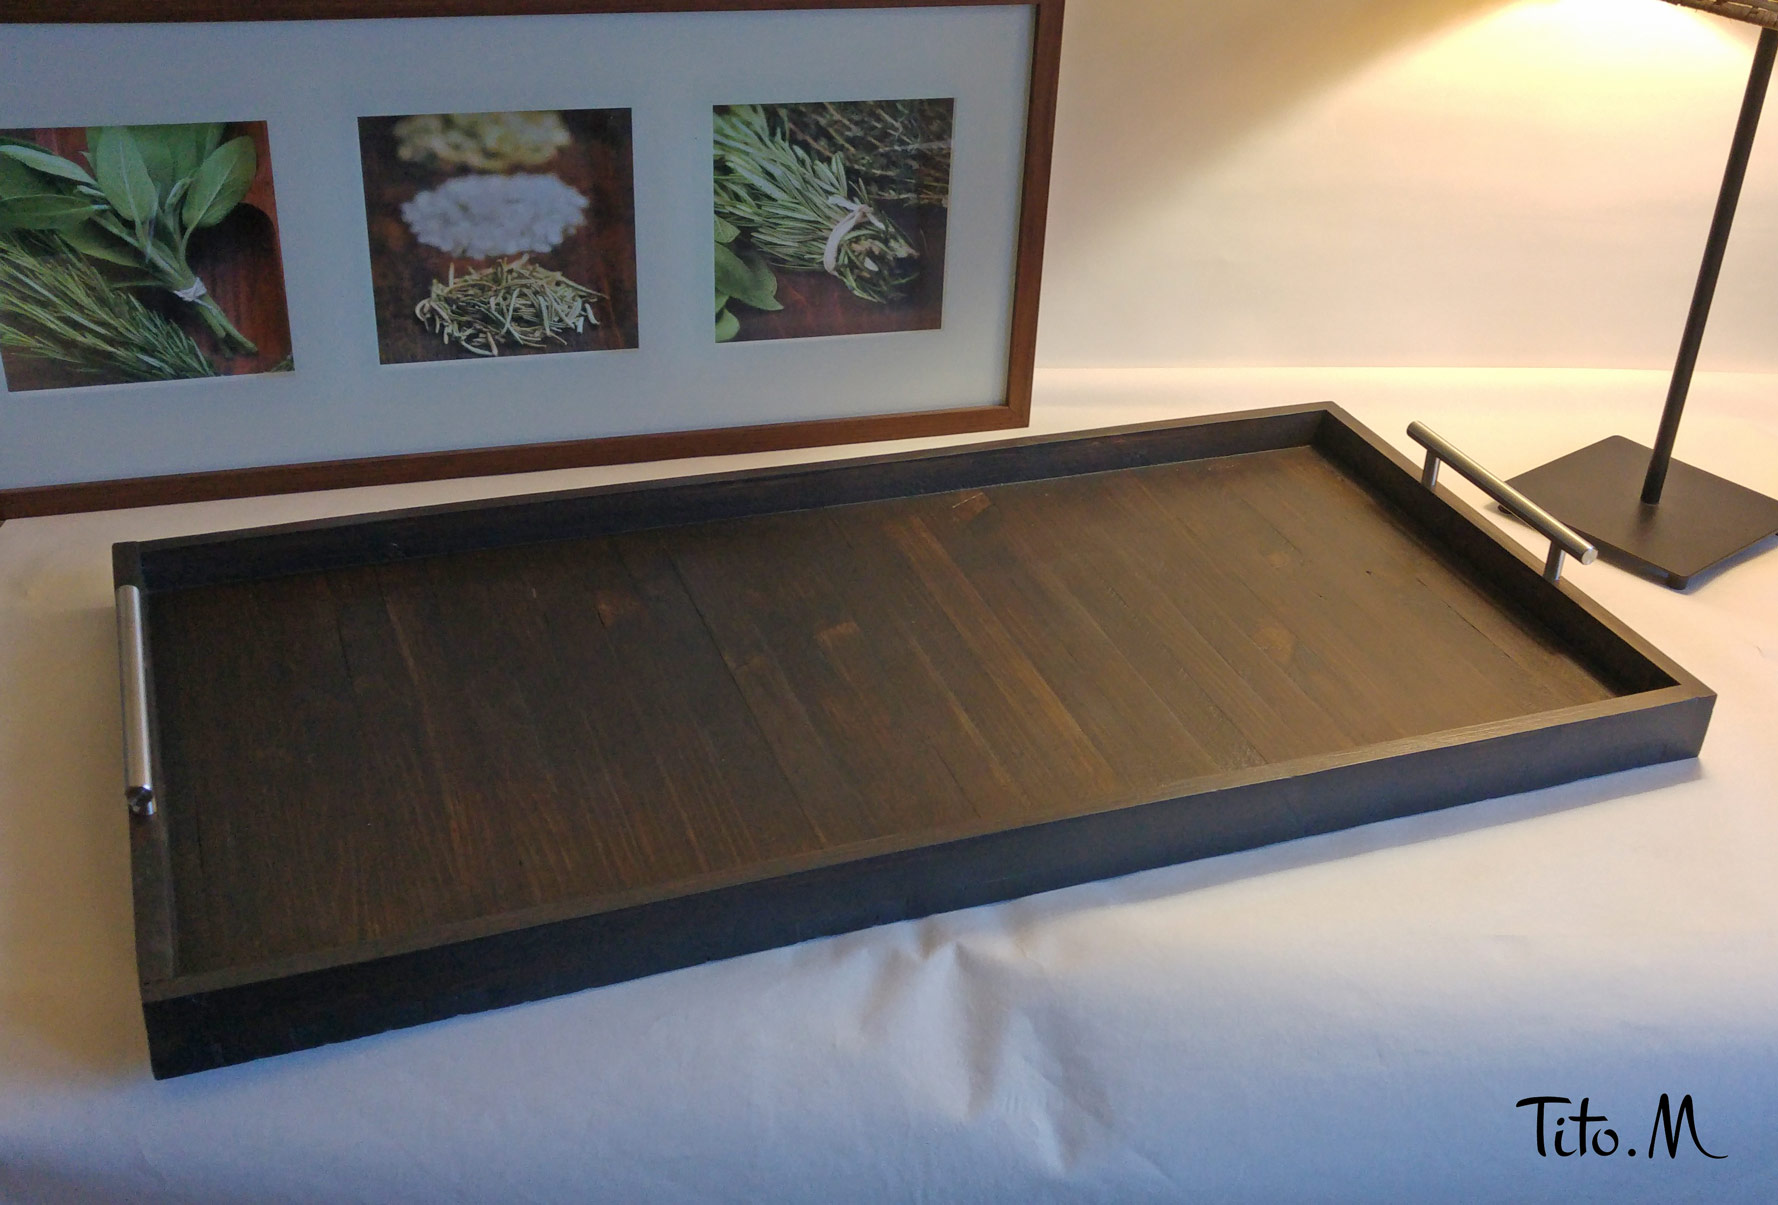 SUFEILE-plateaux en bois pour service de petit déj – Grandado